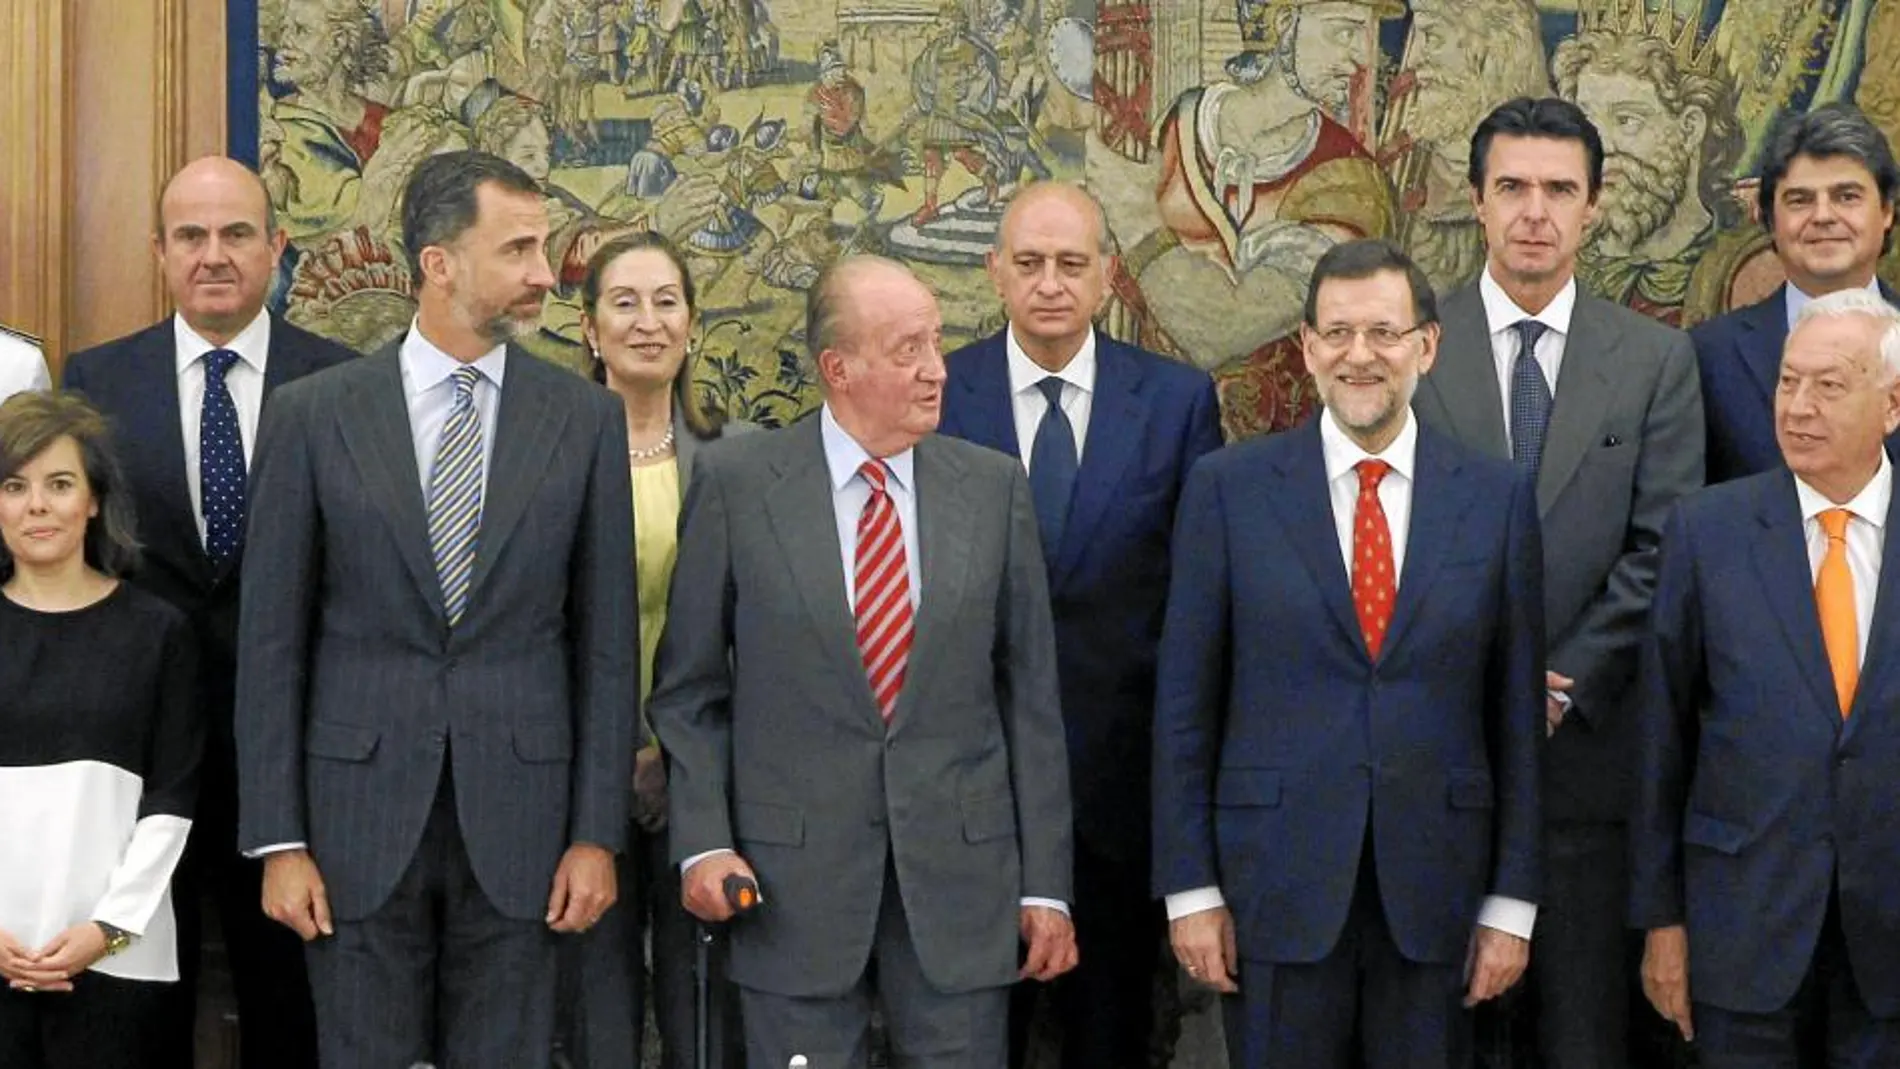 El Rey posa en Zarzuela junto a los ministros y otros miembros del Consejo antes del encuentro